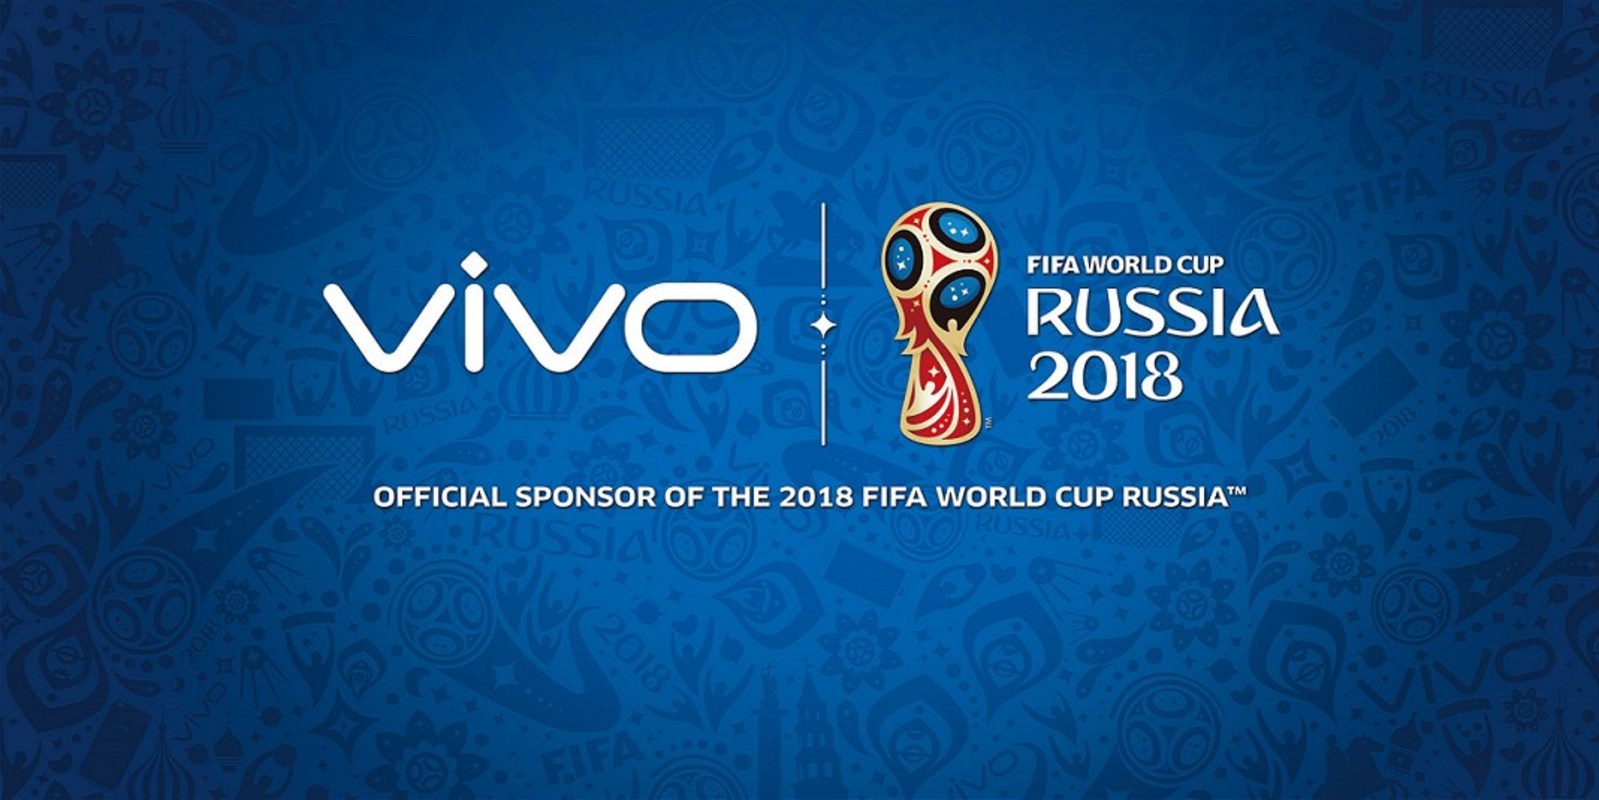 เล่นใหญ่.. vivo เซ็นสัญญากับ FIFA เป็นสปอนเซอร์การแข่งขันฟุตบอลโลกปี 2018 และ 2022